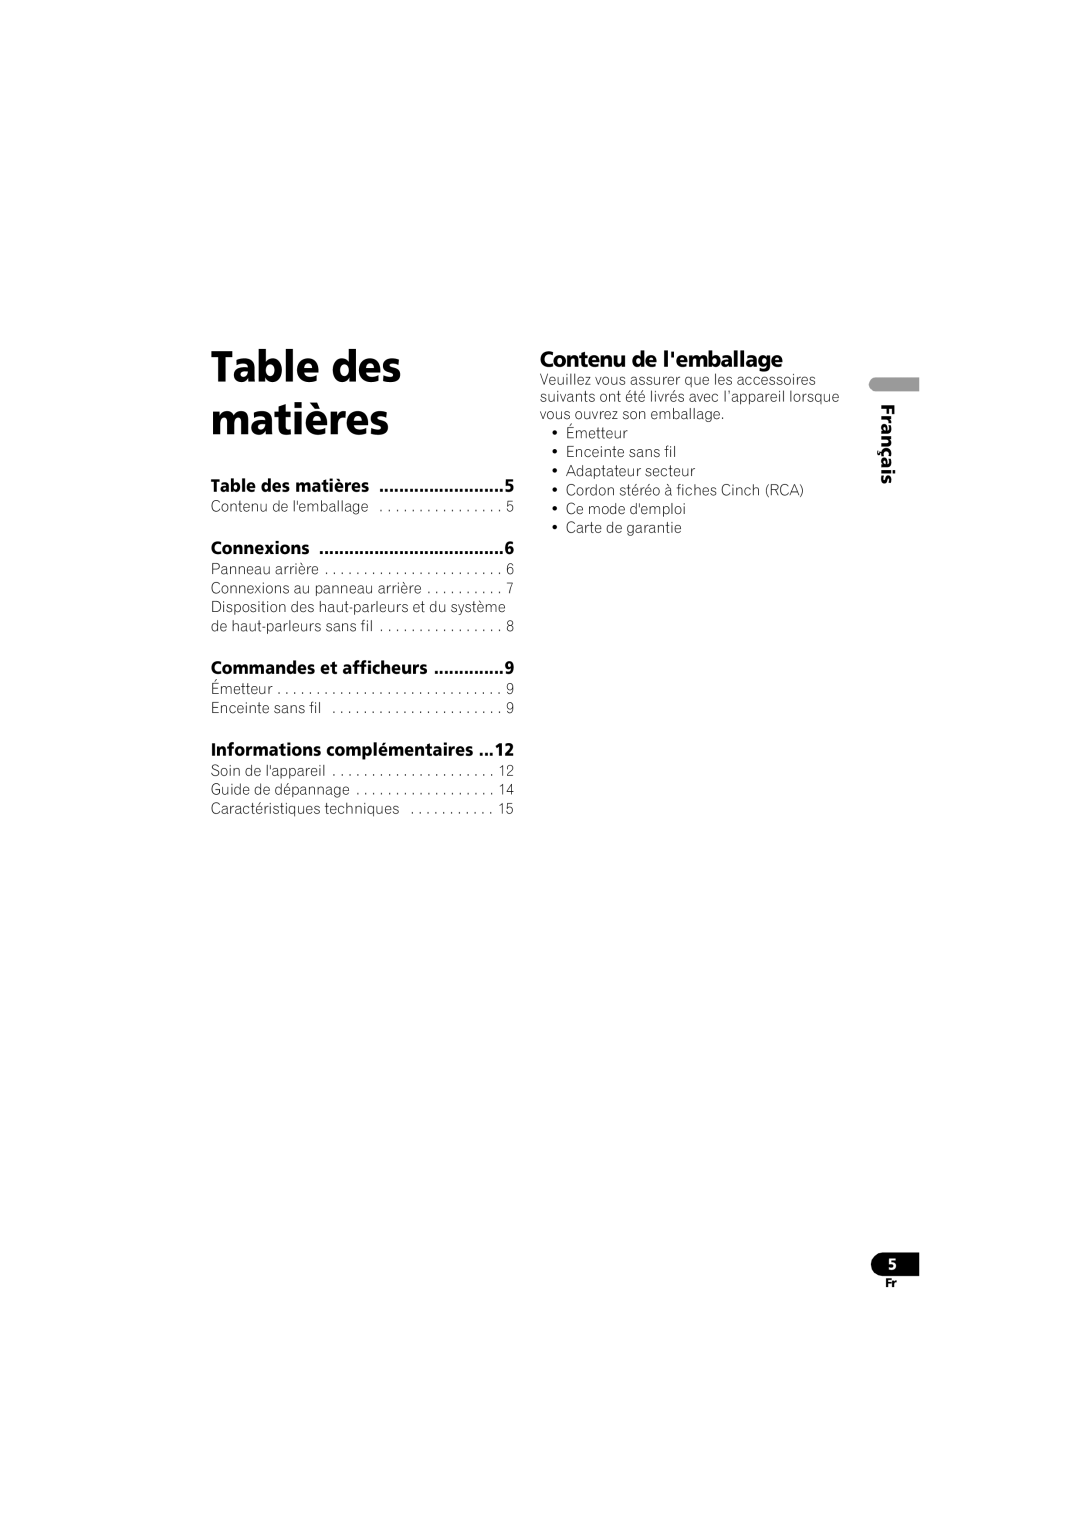 Pioneer XW-HTD630A Contenu de lemballage, Informations complémentaires, Table des matières, Connexions, Français 